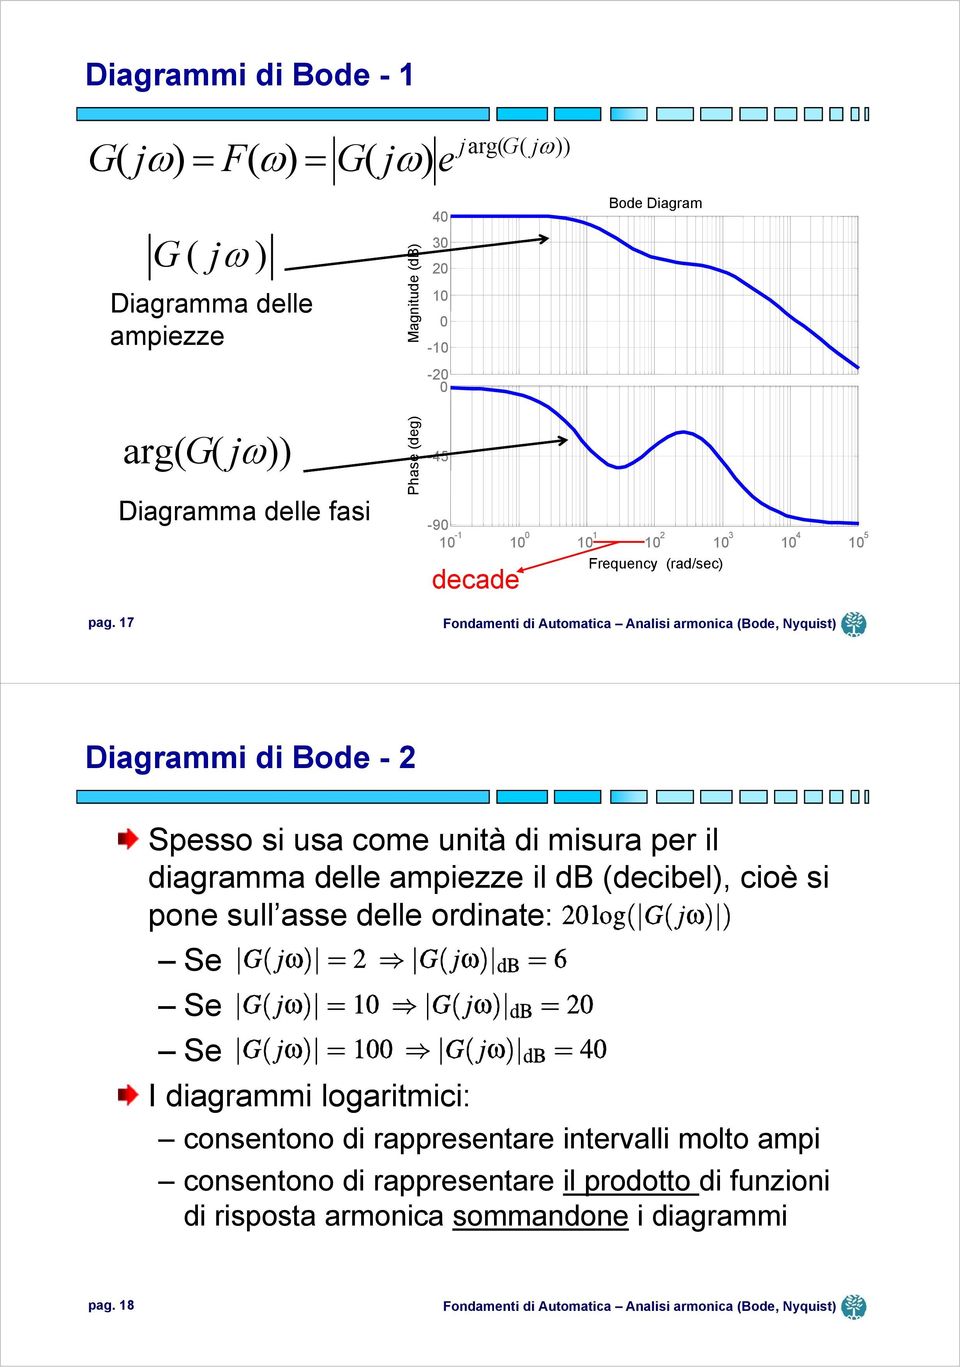 7 0 3 Frequency (rad/sec) 4 Diagrammi di Bode - Spesso si usa come unità di misura per il diagramma delle ampiezze il db (decibel), cioè si